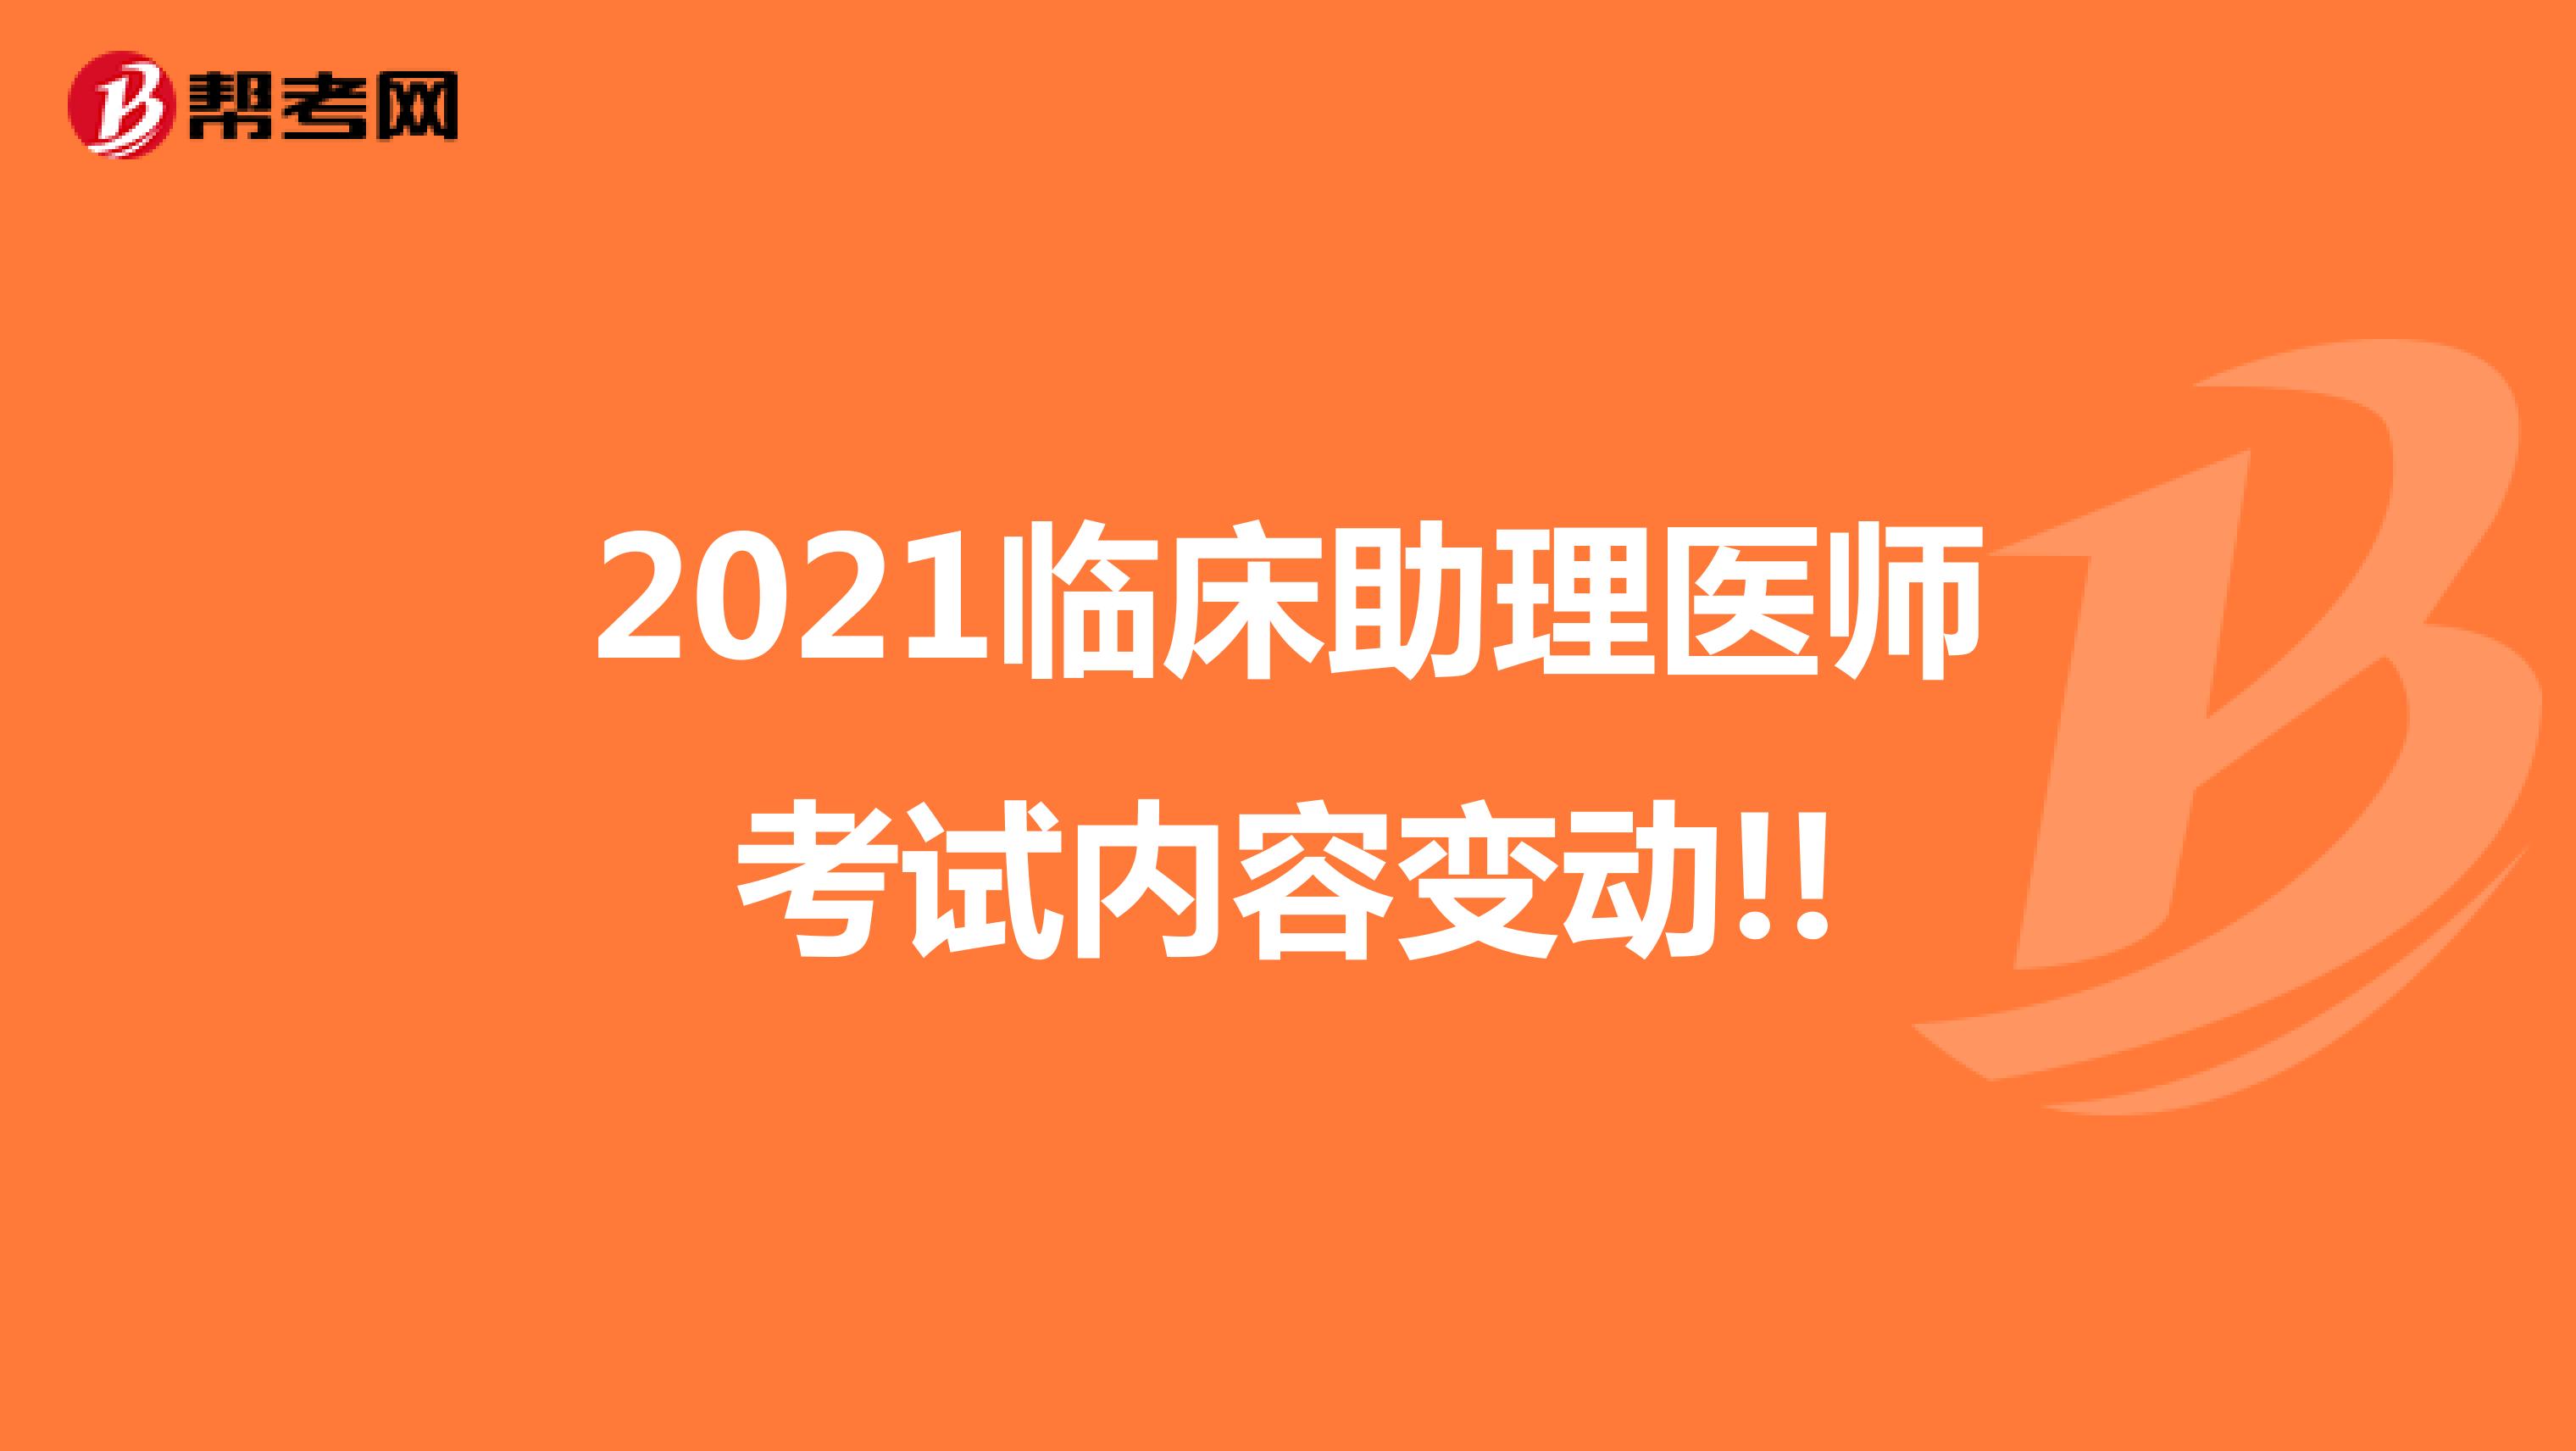 2021临床助理医师考试内容变动!!